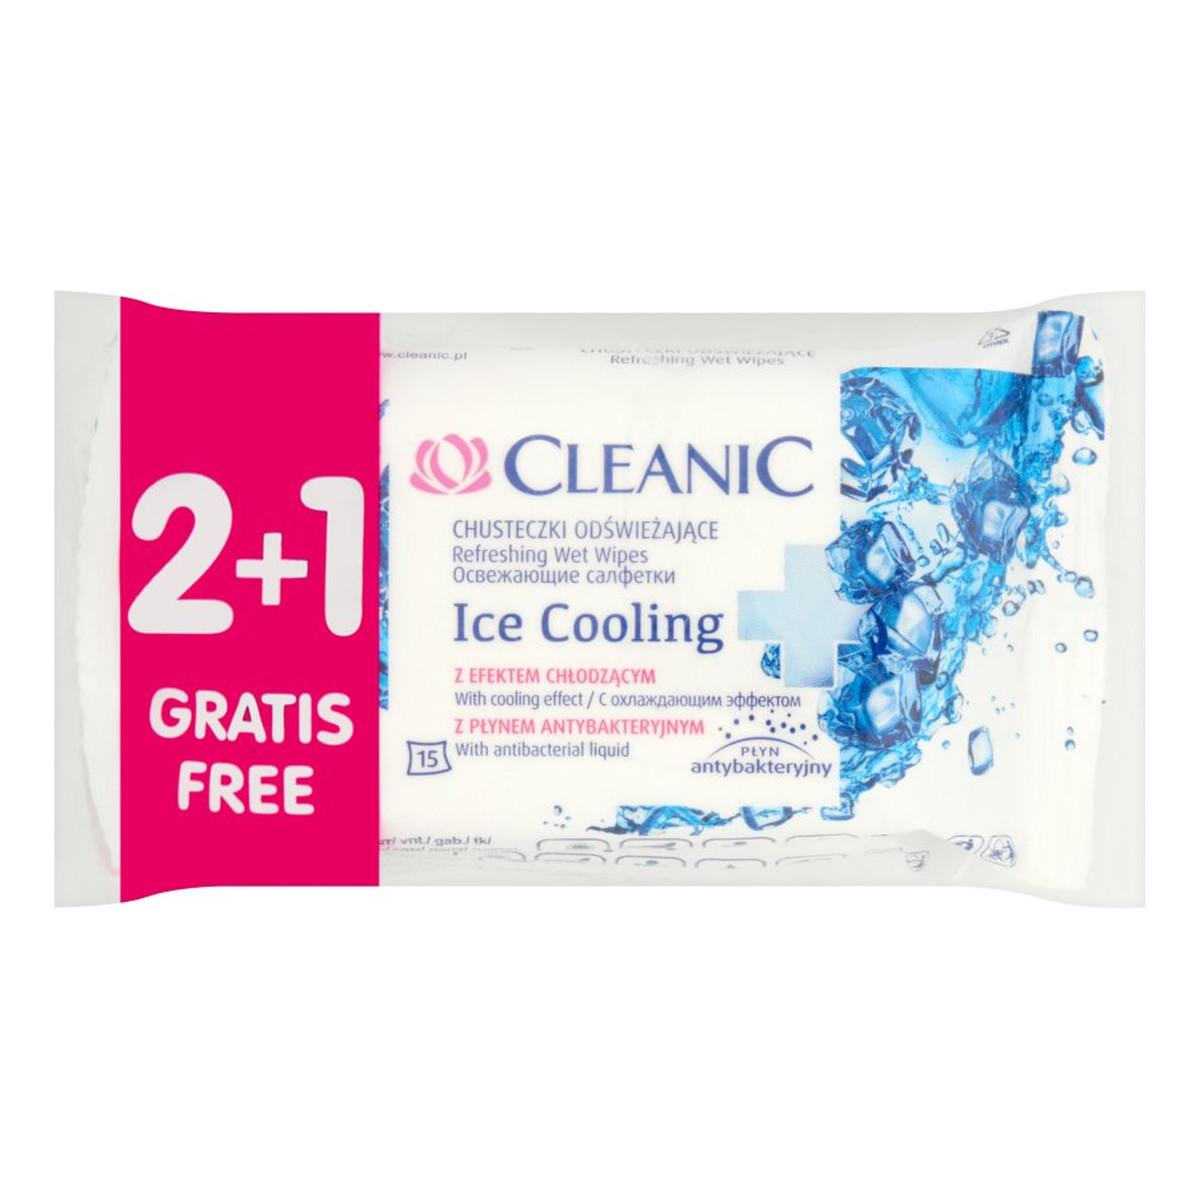 Cleanic Ice Cooling Chusteczki odświeżające 3 x 15 sztuk